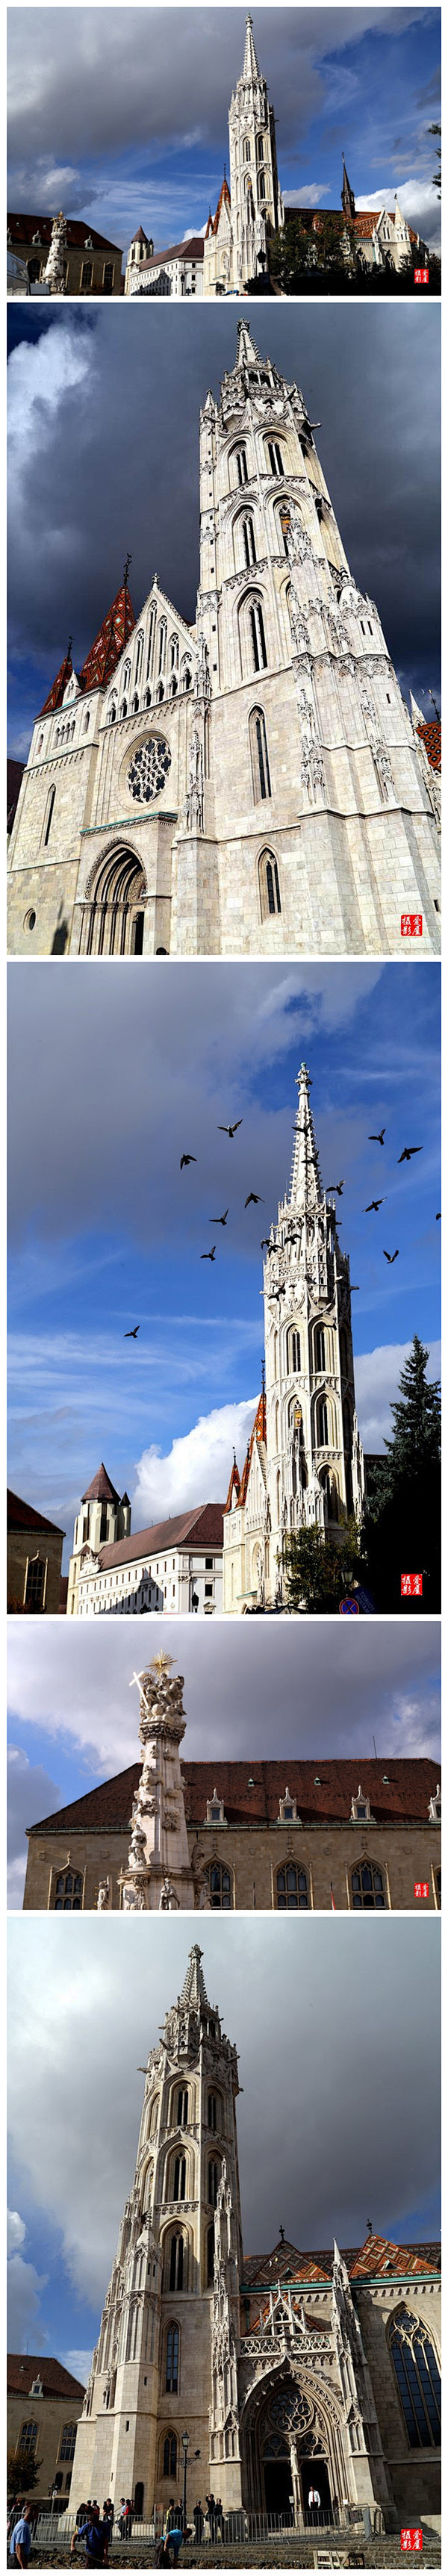 #摄影作品#匈牙利马加什教堂

马加什教...